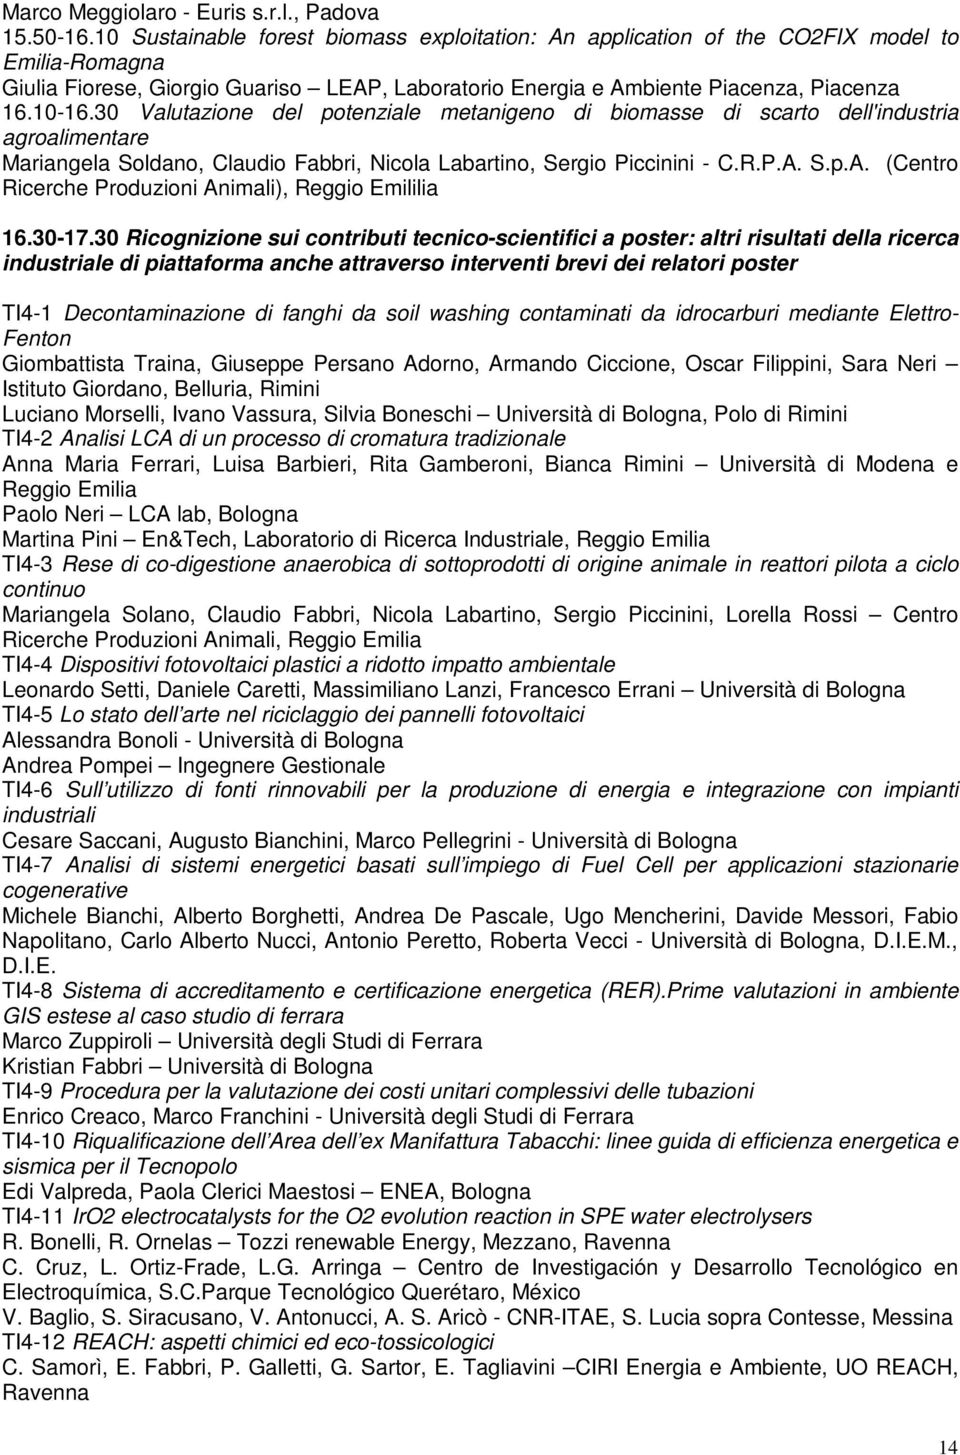 30 Valutazione del potenziale metanigeno di biomasse di scarto dell'industria agroalimentare Mariangela Soldano, Claudio Fabbri, Nicola Labartino, Sergio Piccinini - C.R.P.A.